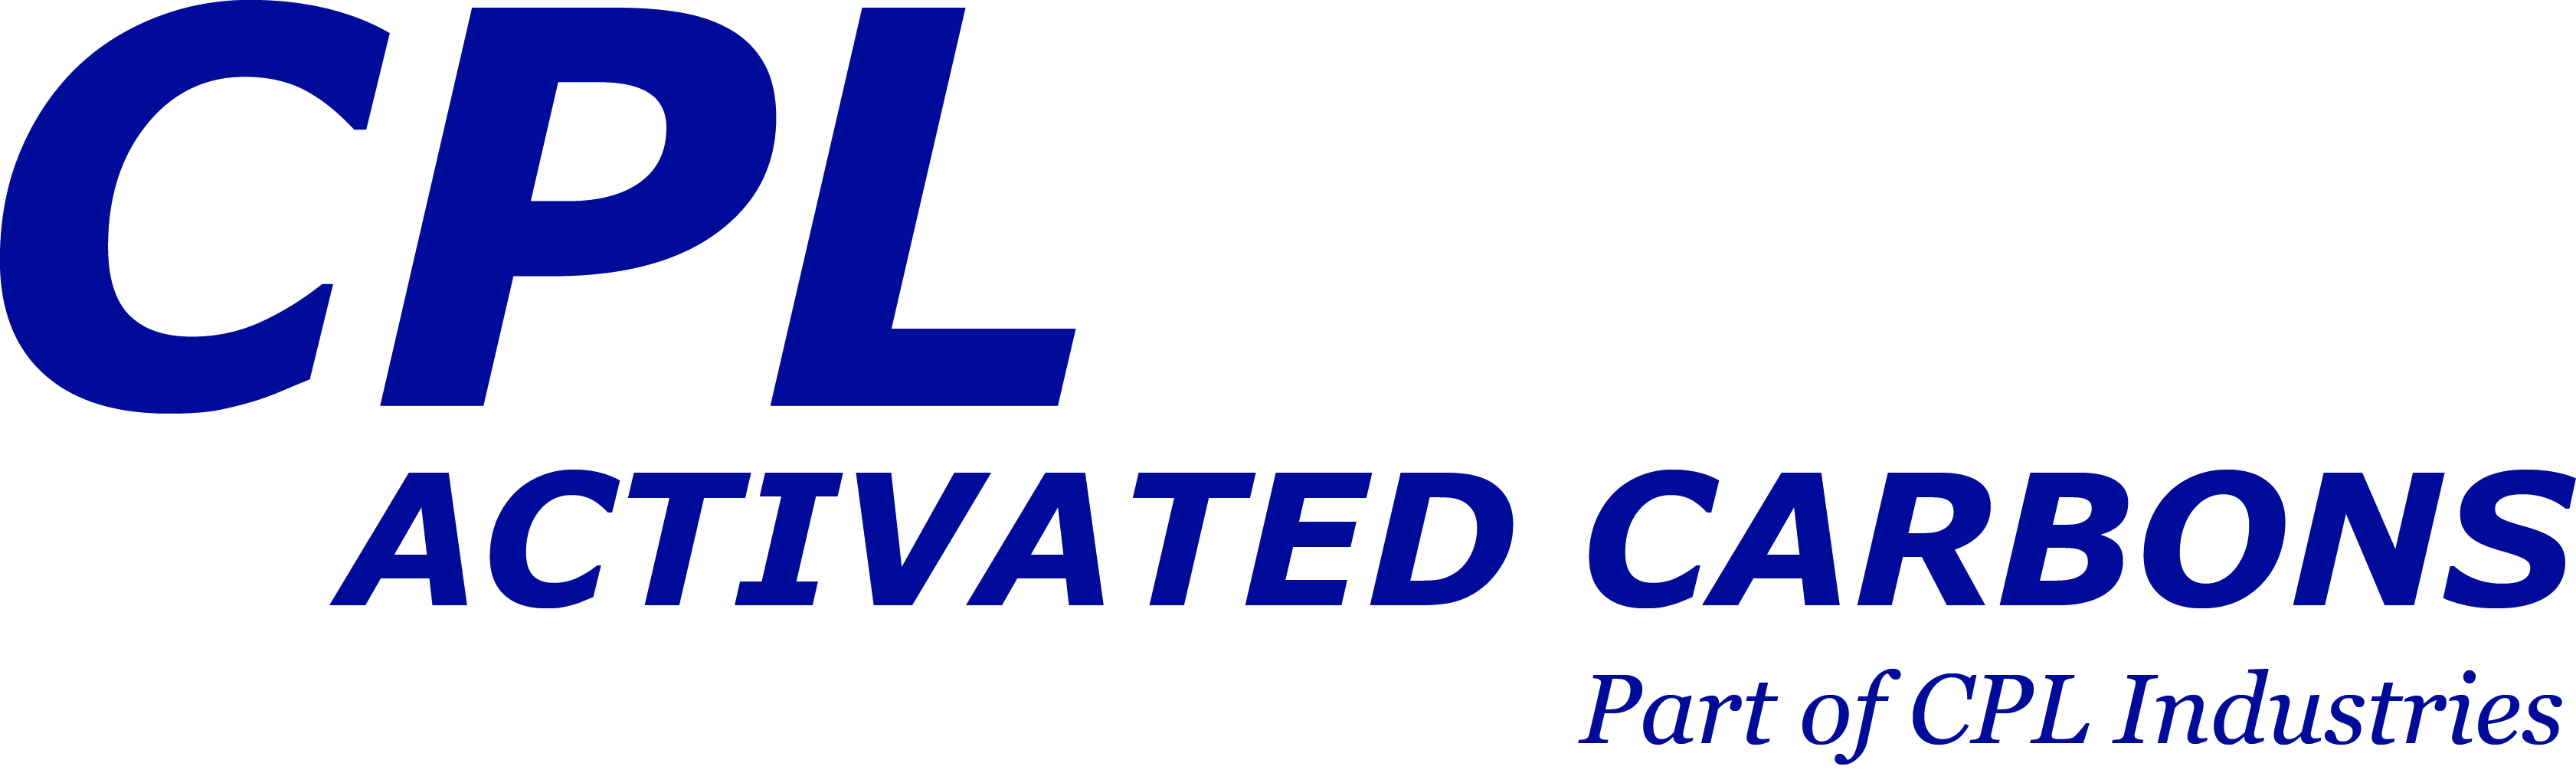 Organisation Logo - CPL Industries Ltd